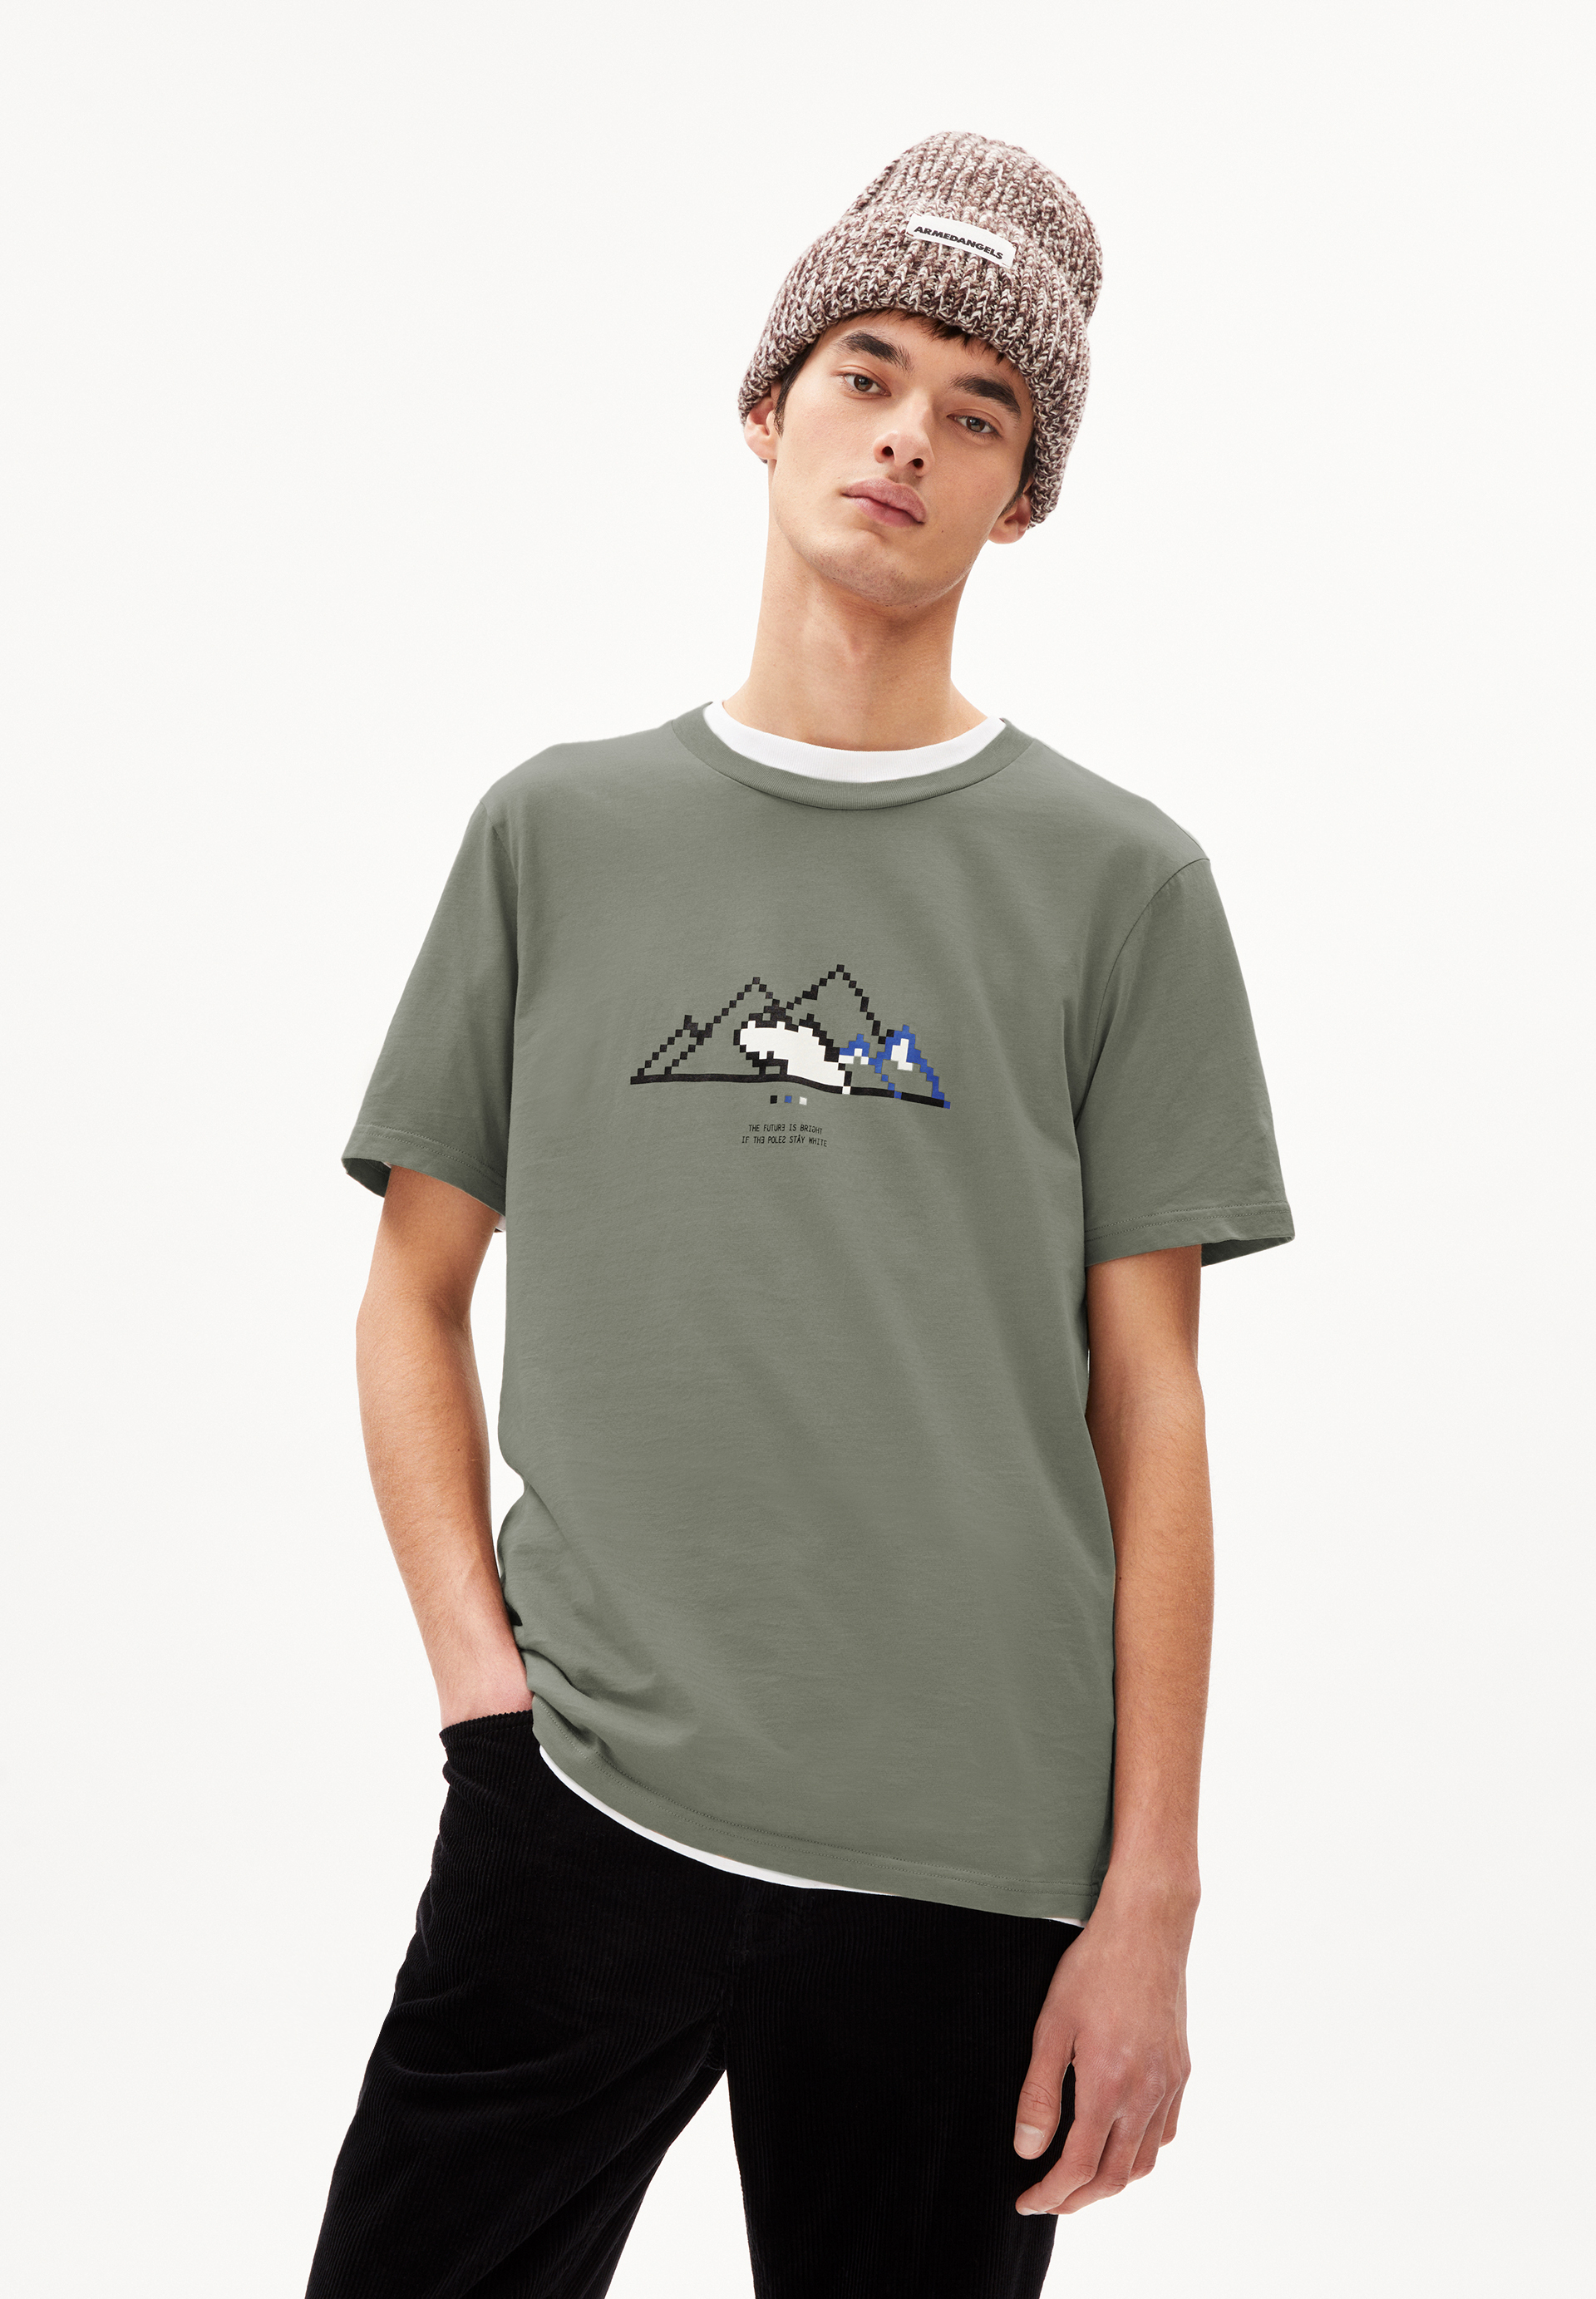 JAAMES PIXXEL MOUNTAIN T-Shirt Regular Fit made of Organic Cotton